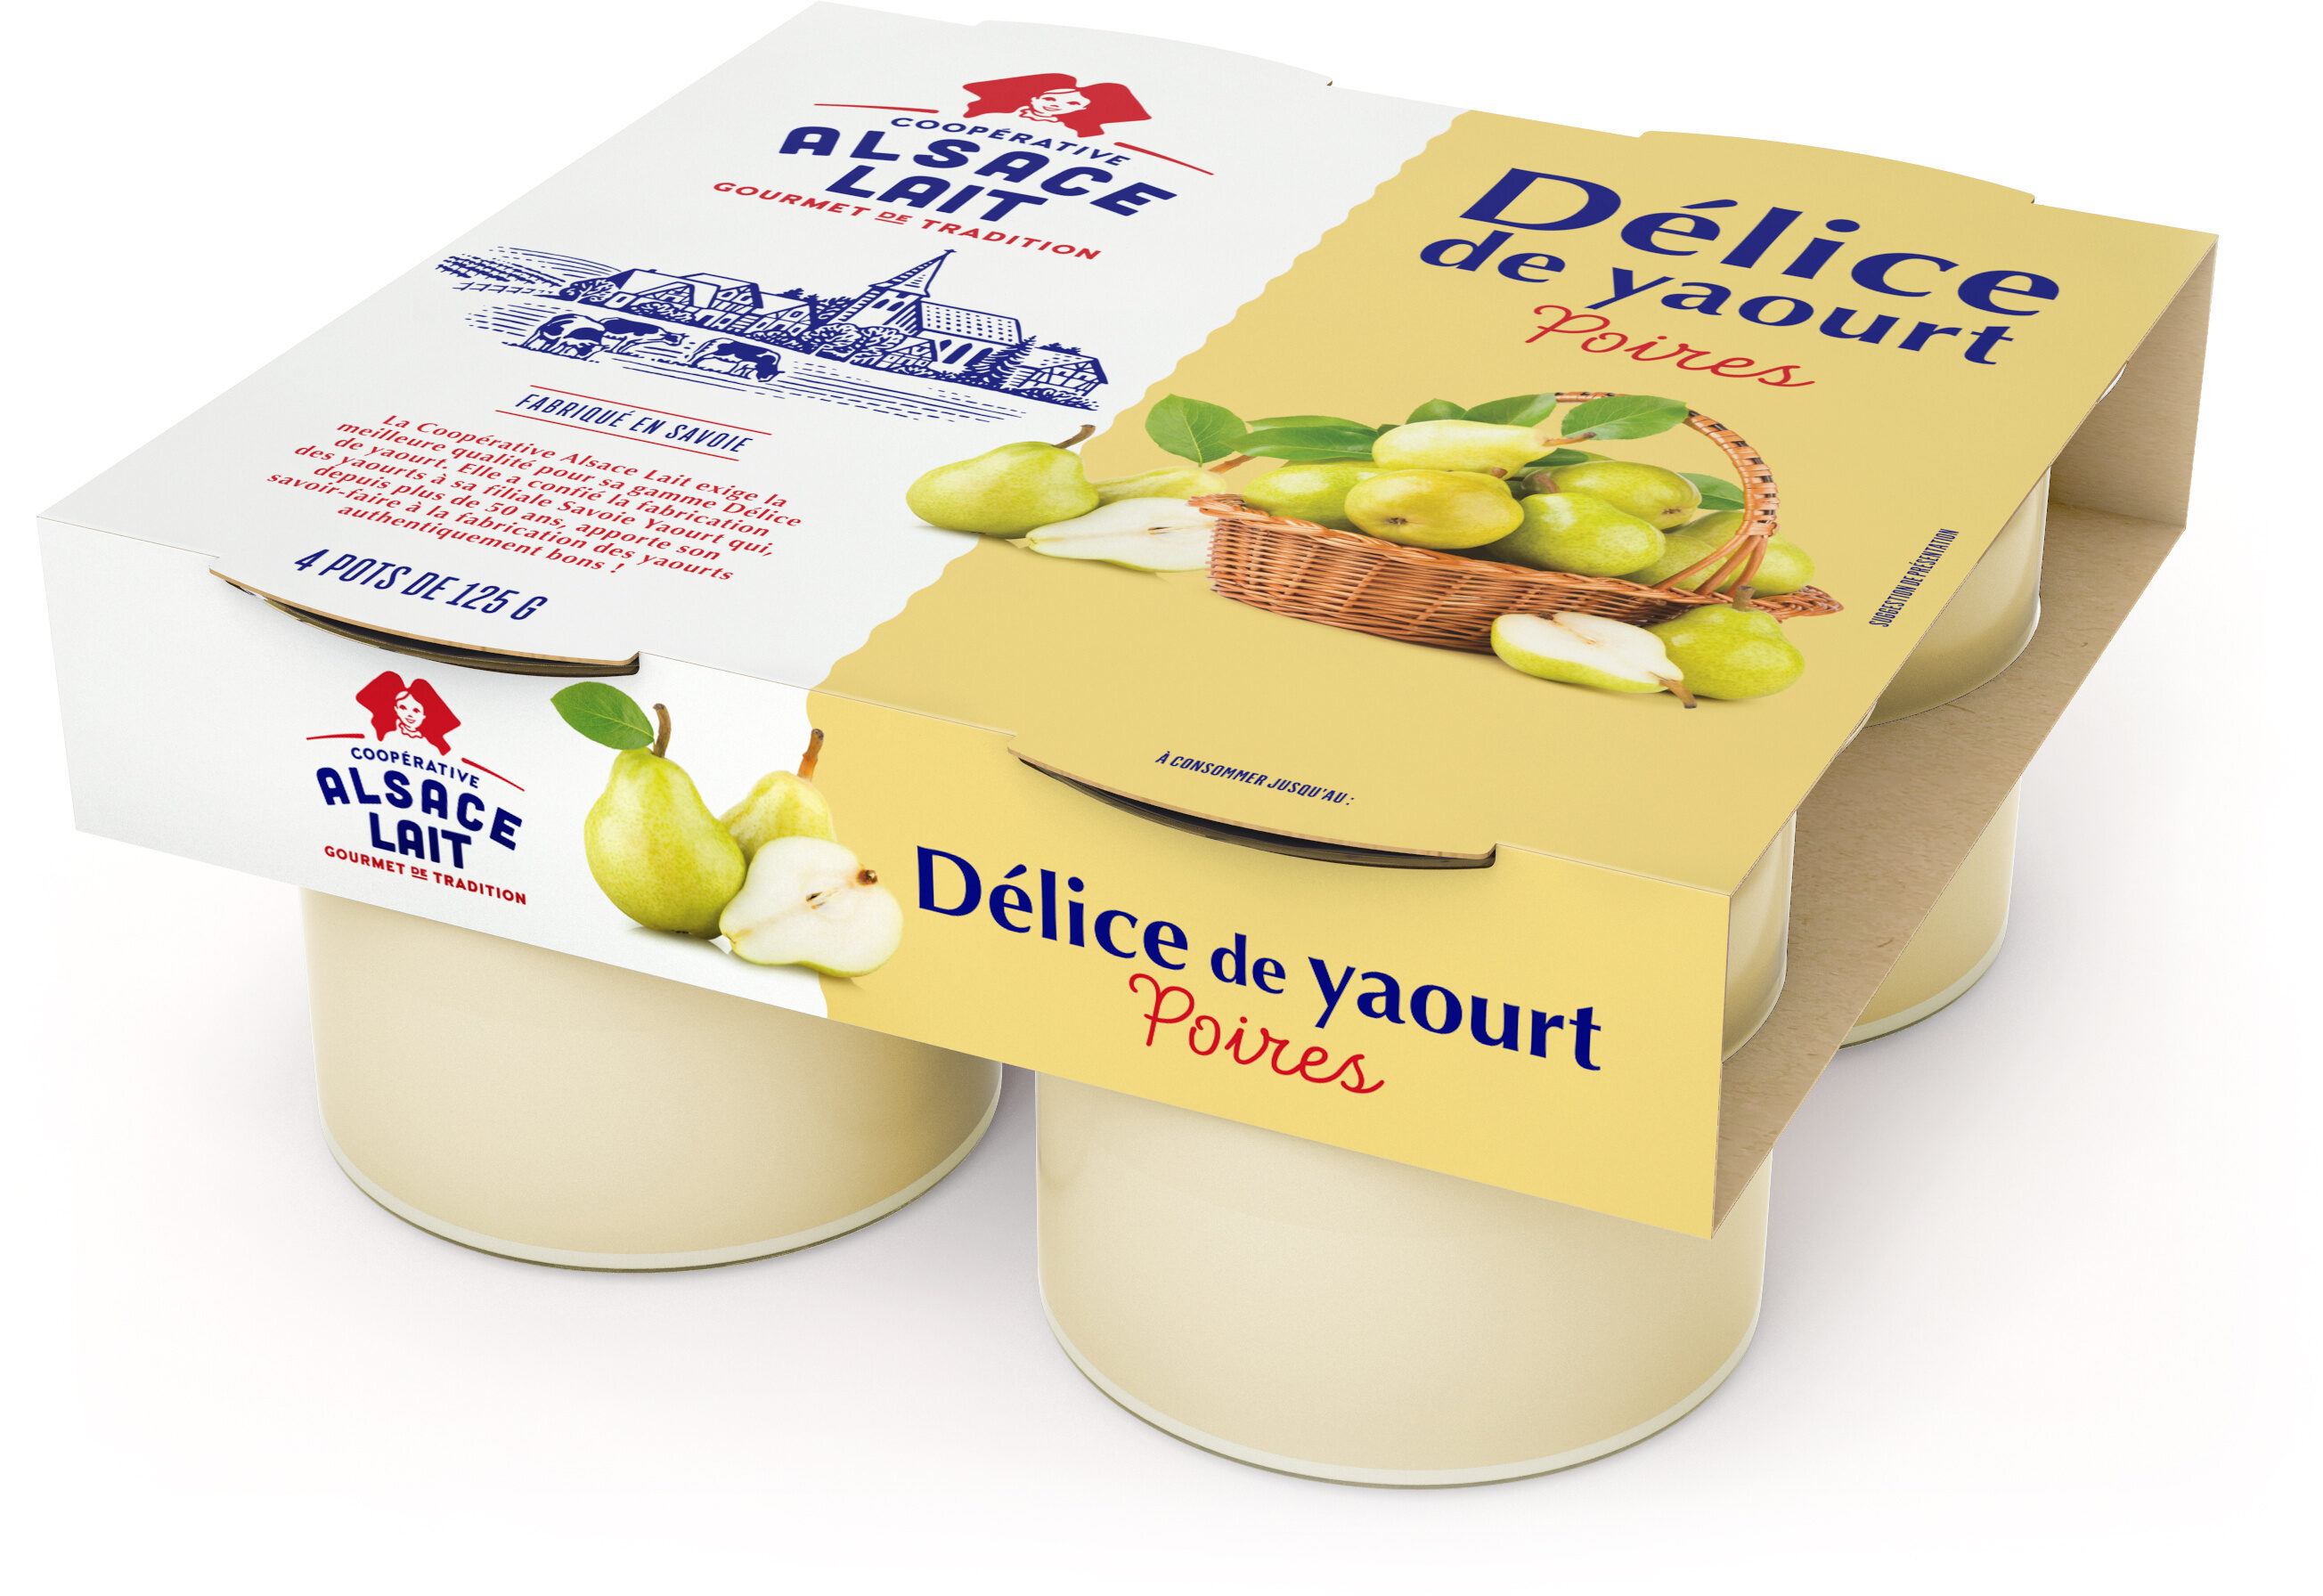 Delice de yaourt poires - Produit